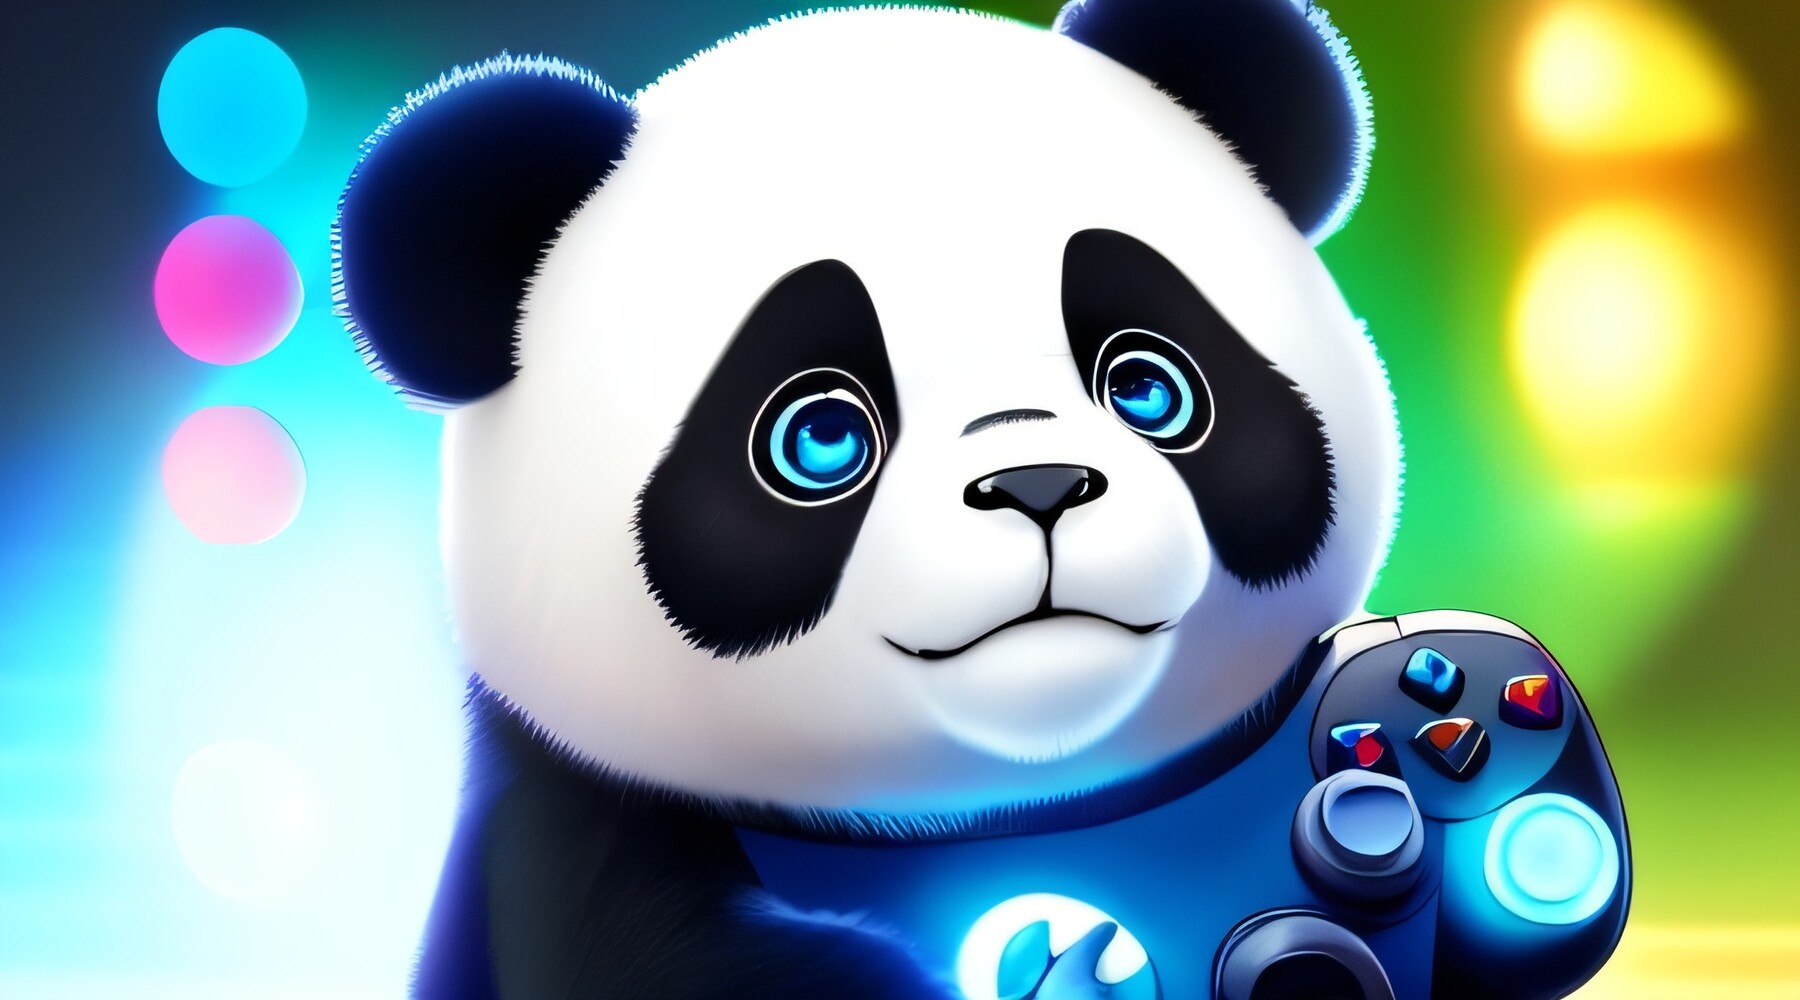 Trò chơi Panda Art sẽ đem đến cho bạn những trải nghiệm đầy màu sắc với hình ảnh con gấu trúc dễ thương. Bạn sẽ được khám phá thế giới tuyệt vời của các nhân vật Panda và trải nghiệm những màn chơi đầy hứng thú. Đừng bỏ lỡ cơ hội trải nghiệm trò chơi đặc sắc này và chiêm ngưỡng những hình ảnh tuyệt vời.